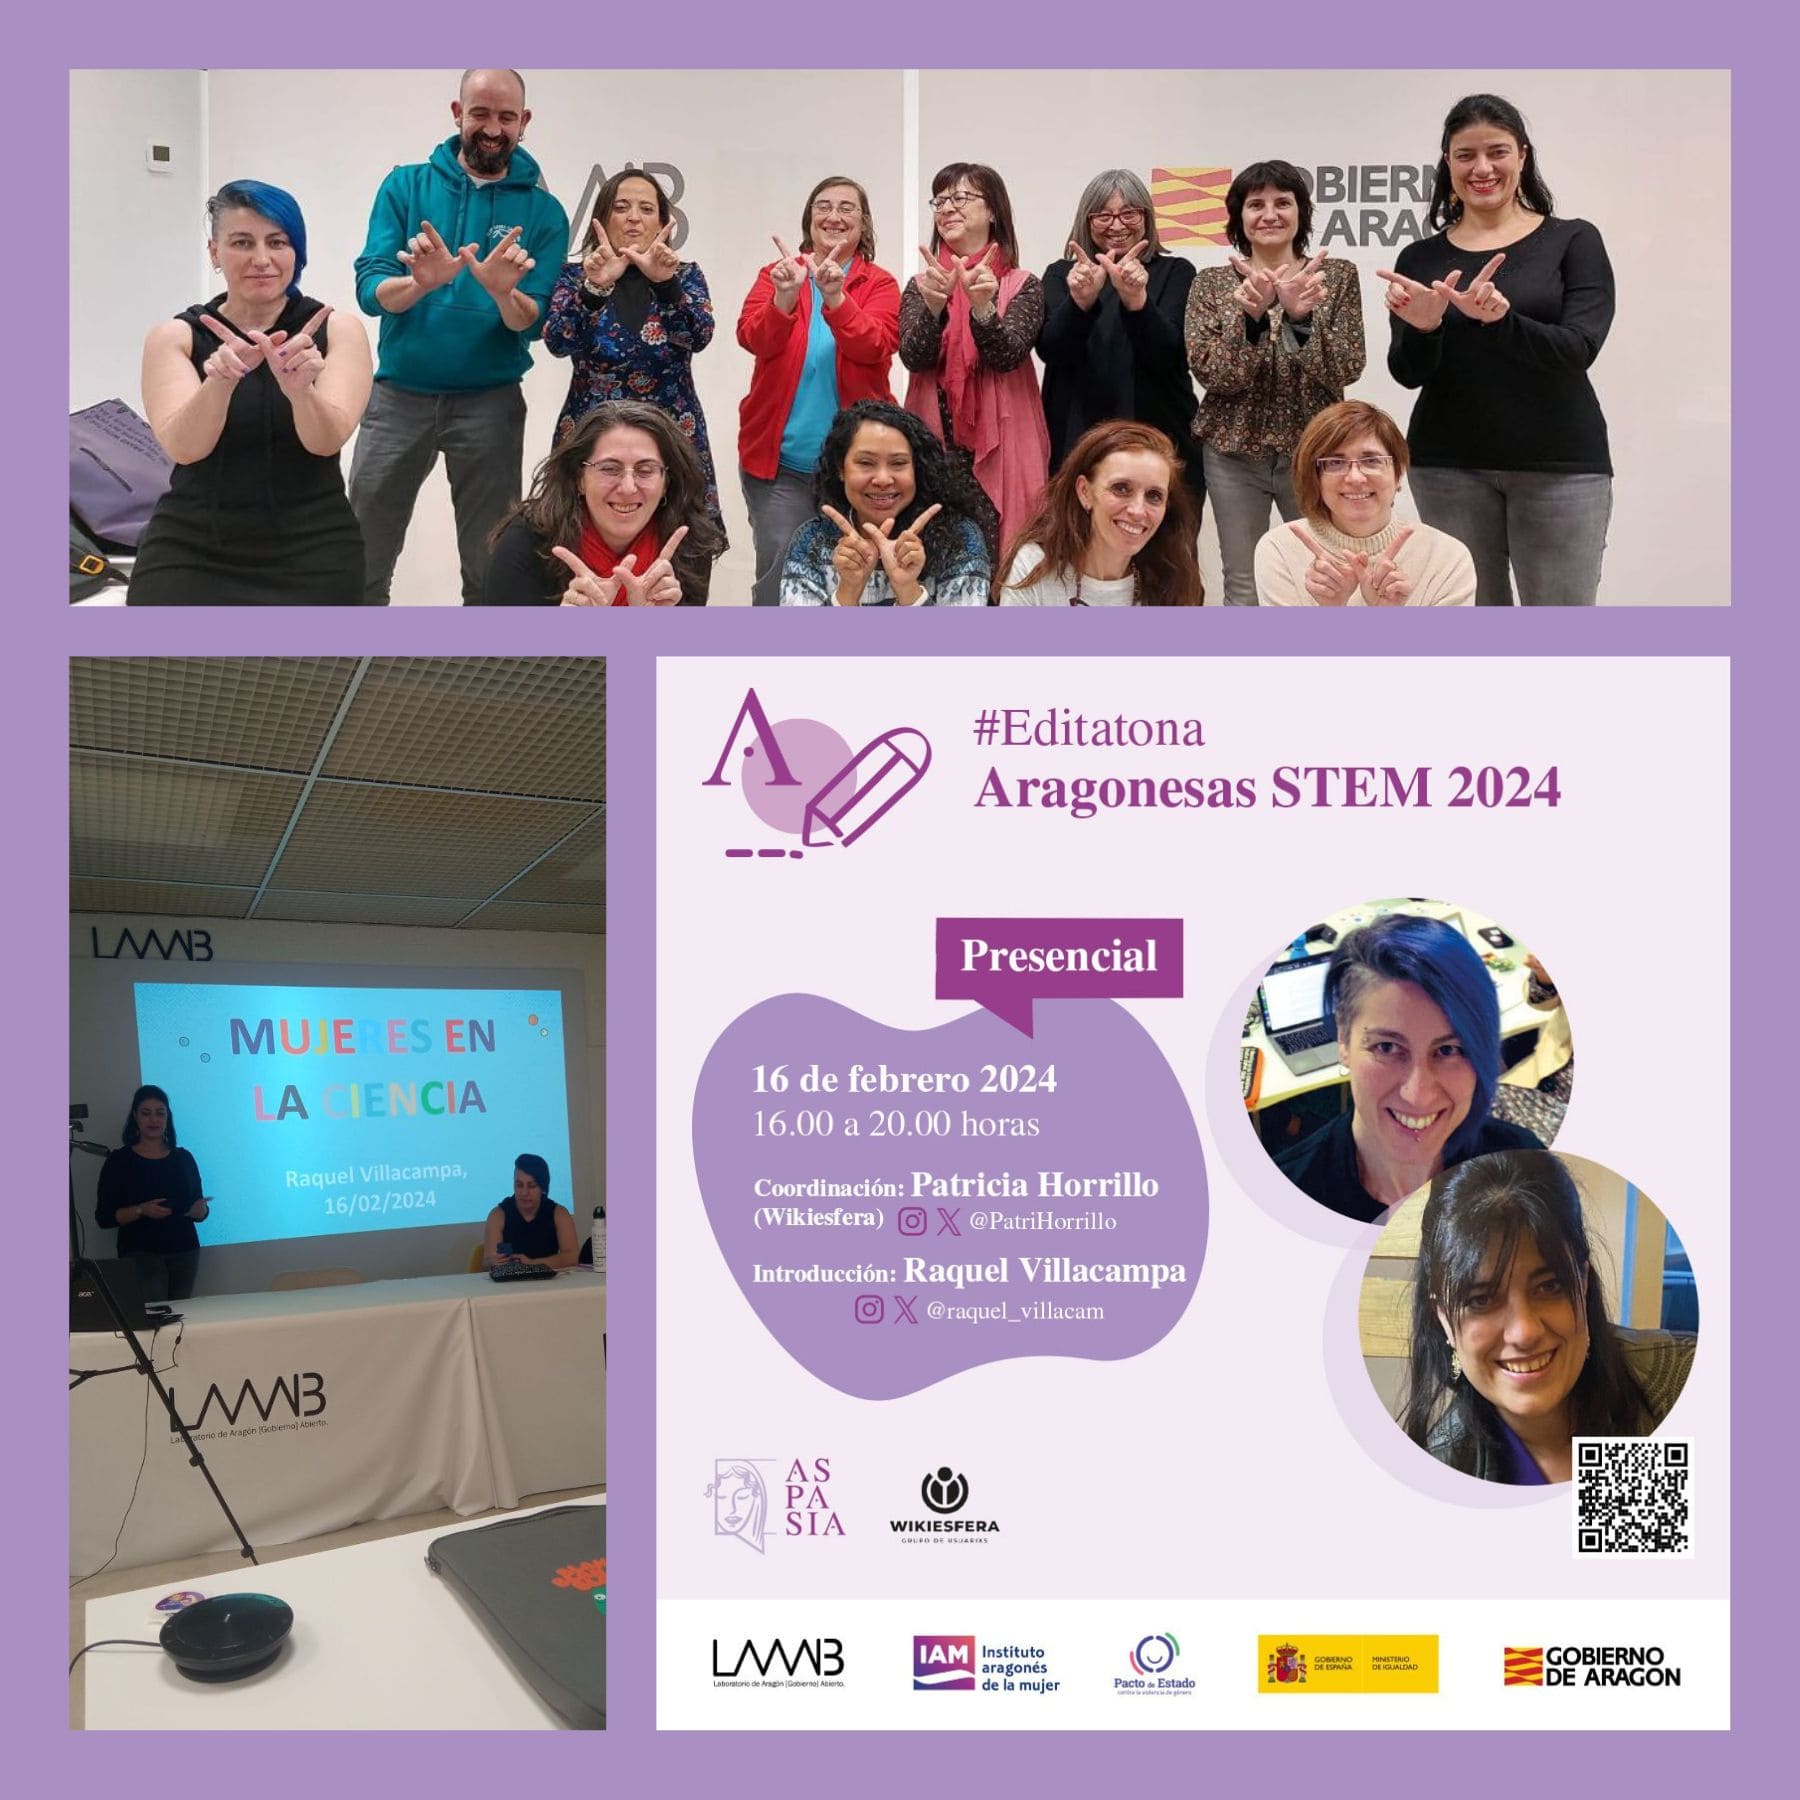 Asistentes y cartel de la editatona mujeres aragonesas STEM 2024